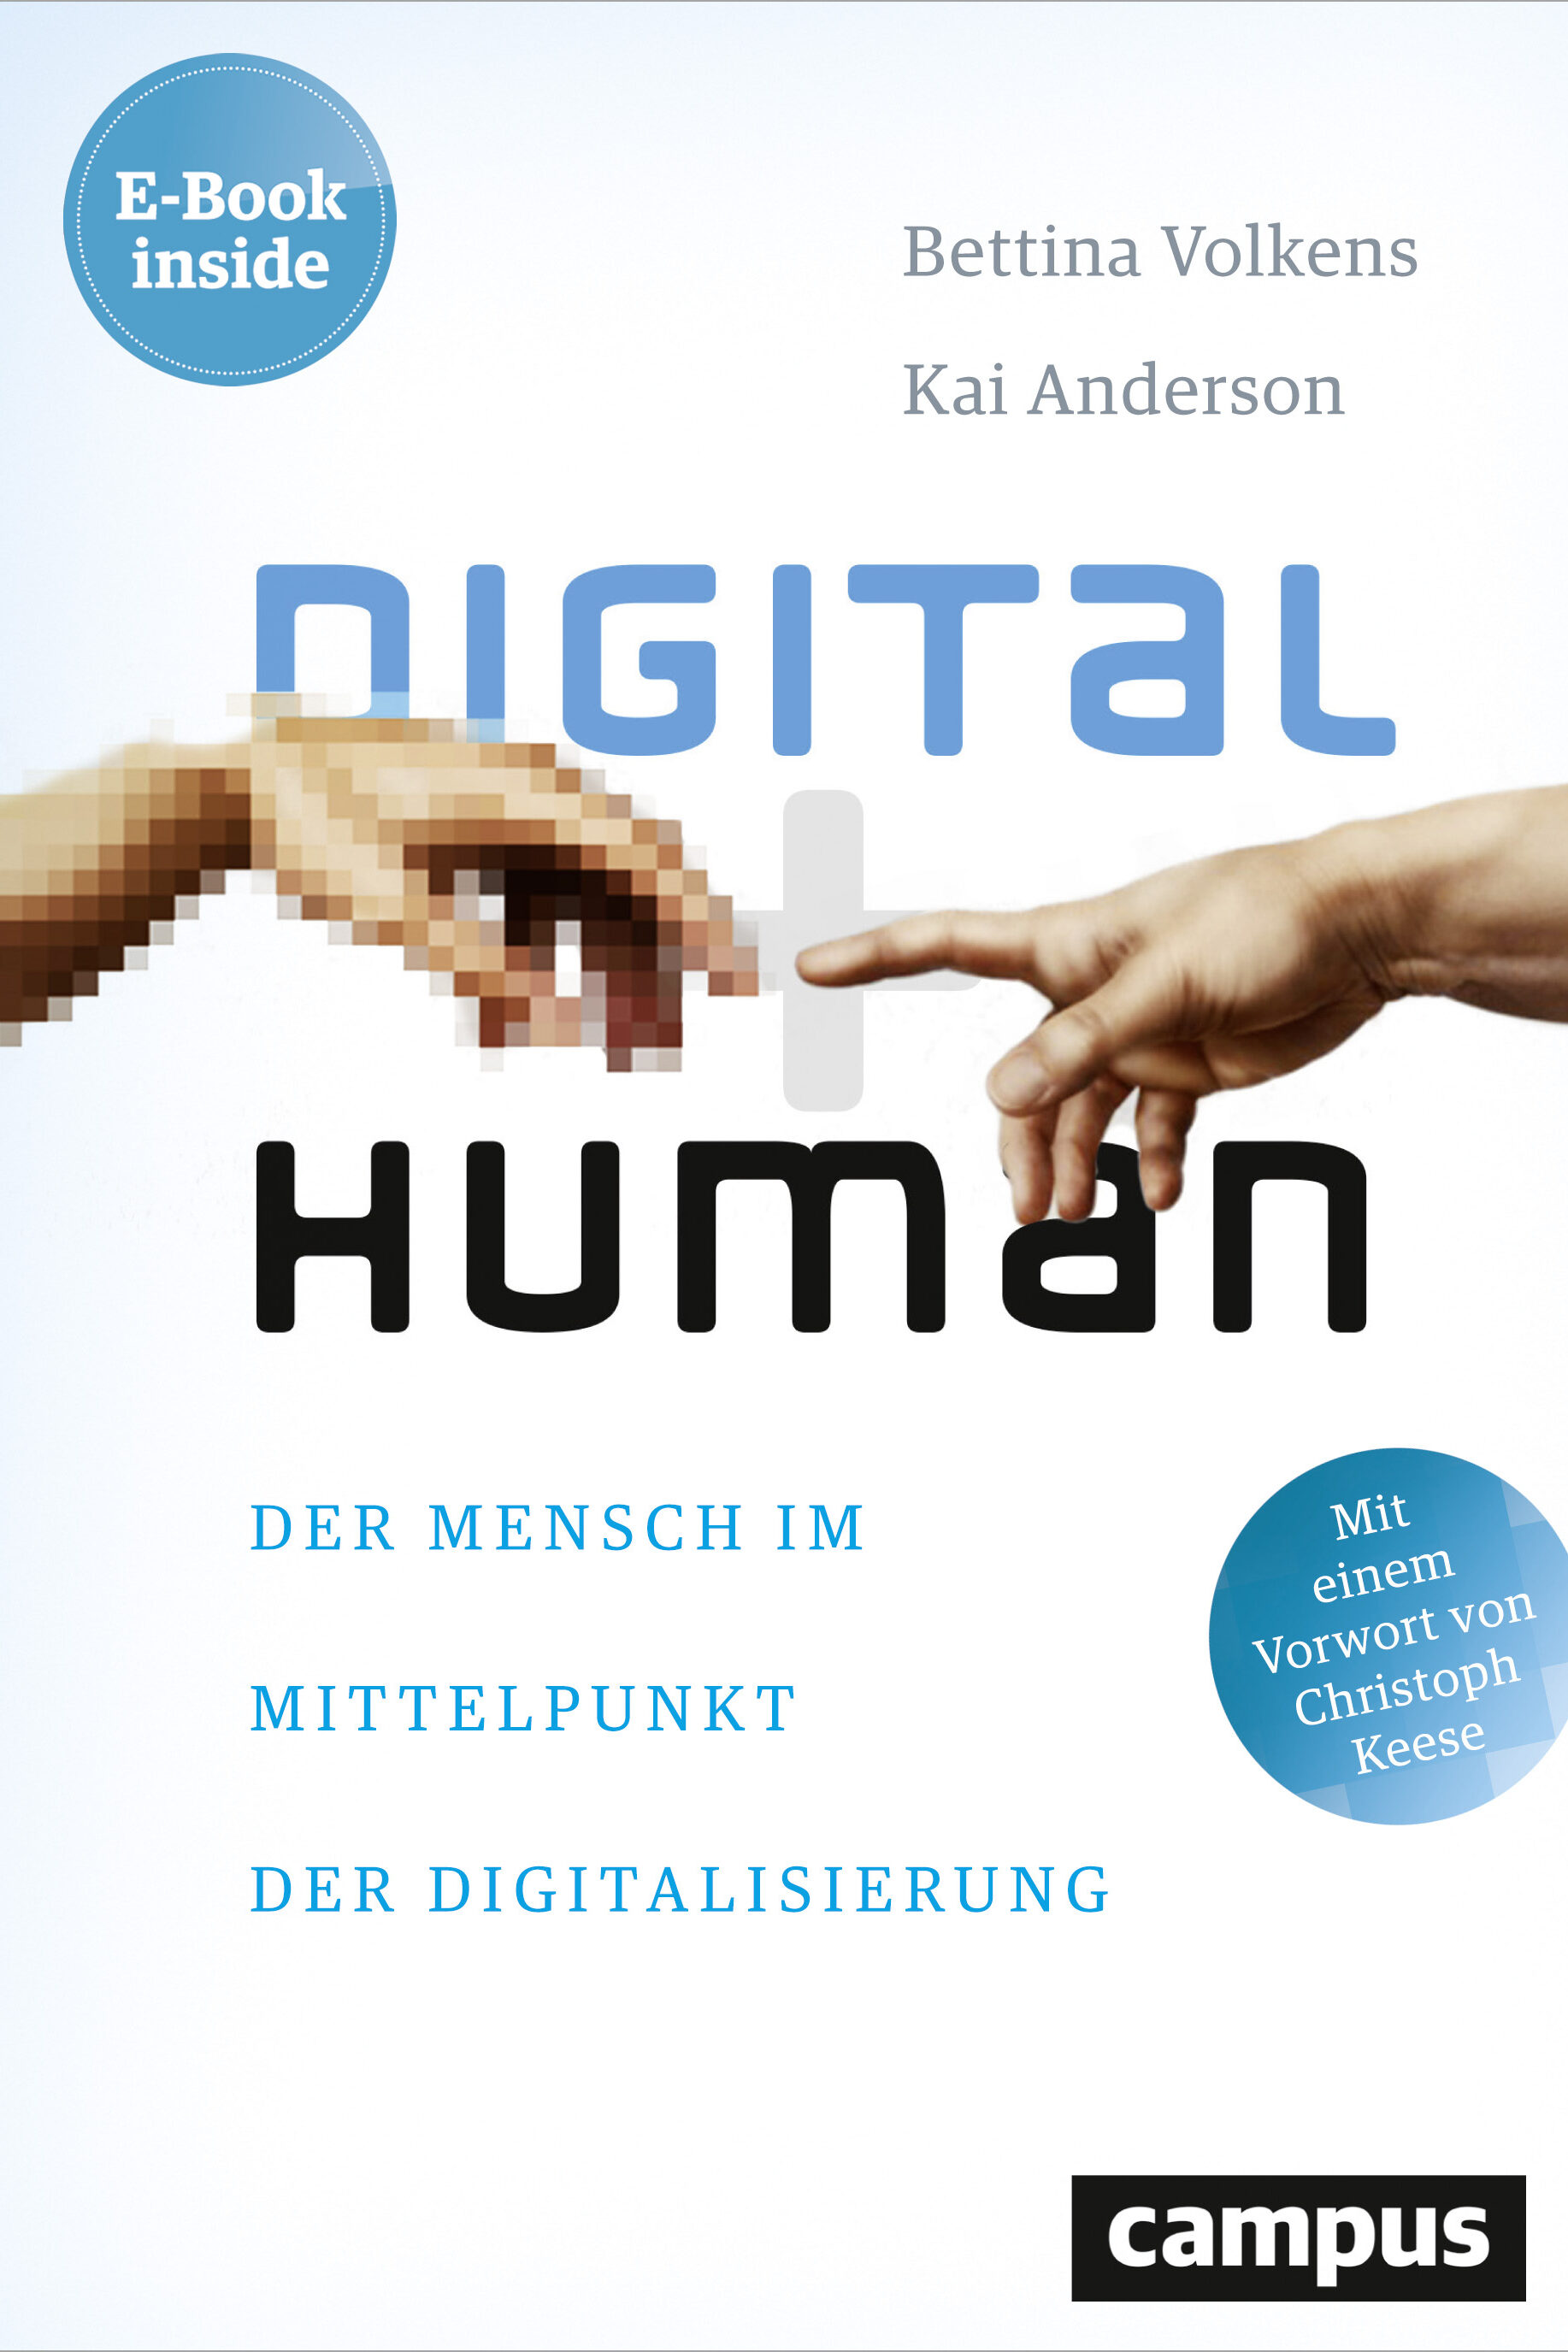 digital human bettina volkens kai anderson sachbuch gesellschaft gesellschaftsentwicklung soziologie digitale welt digitale entwicklung